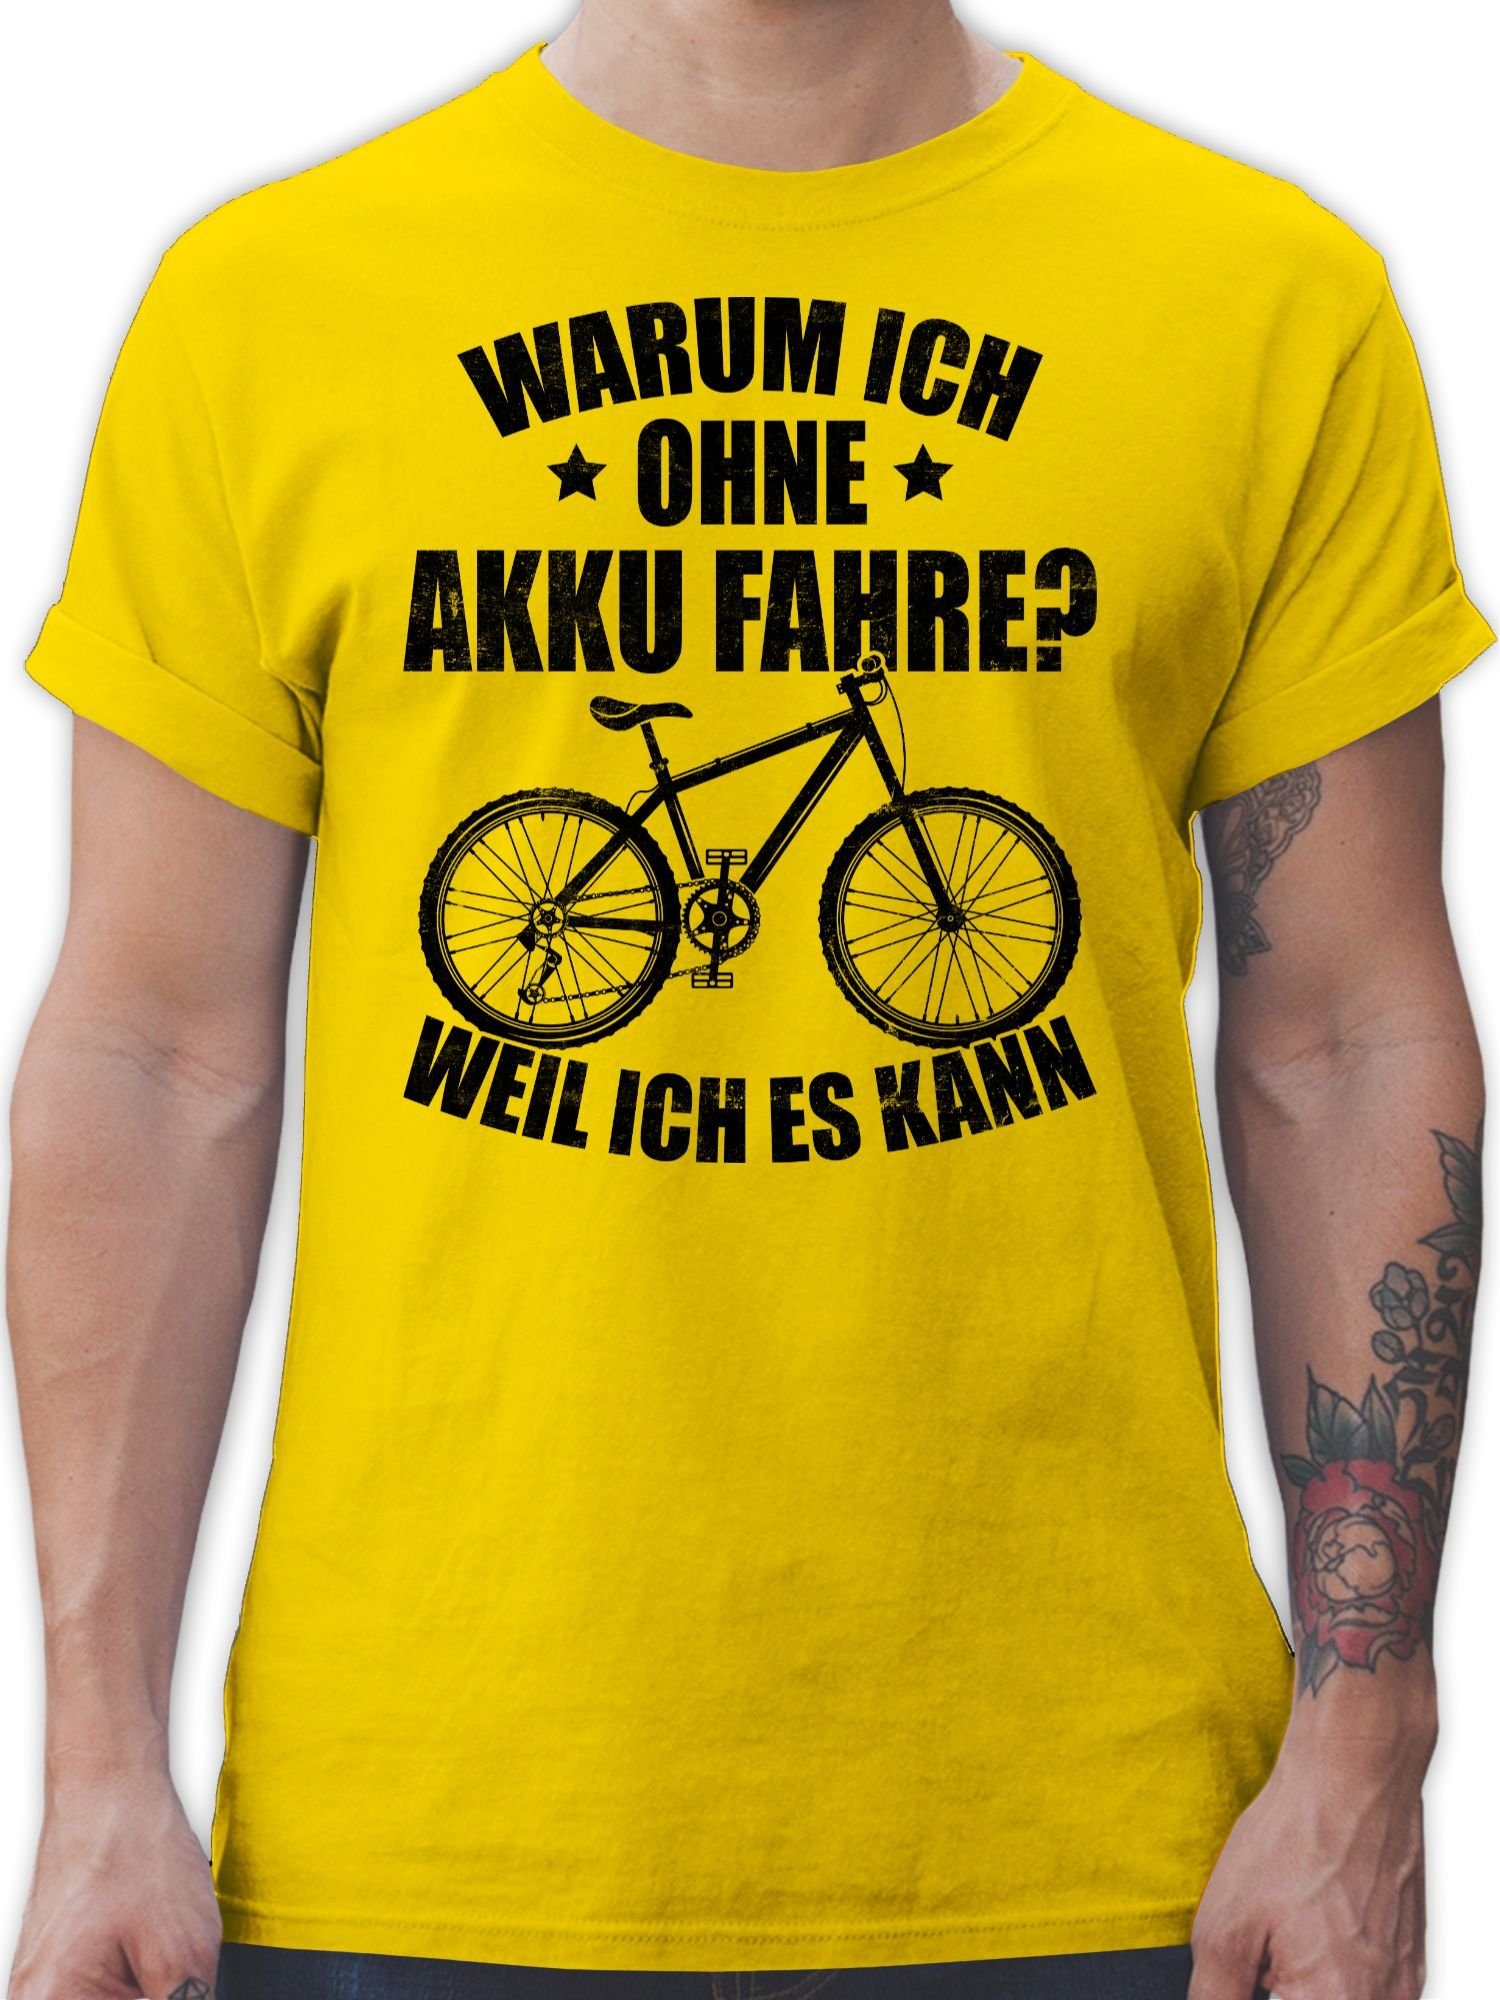 Shirtracer T-Shirt Warum ich - schwarz weil fahre kann ich 03 es Akku - Bekleidung Radsport ohne Fahrrad Gelb